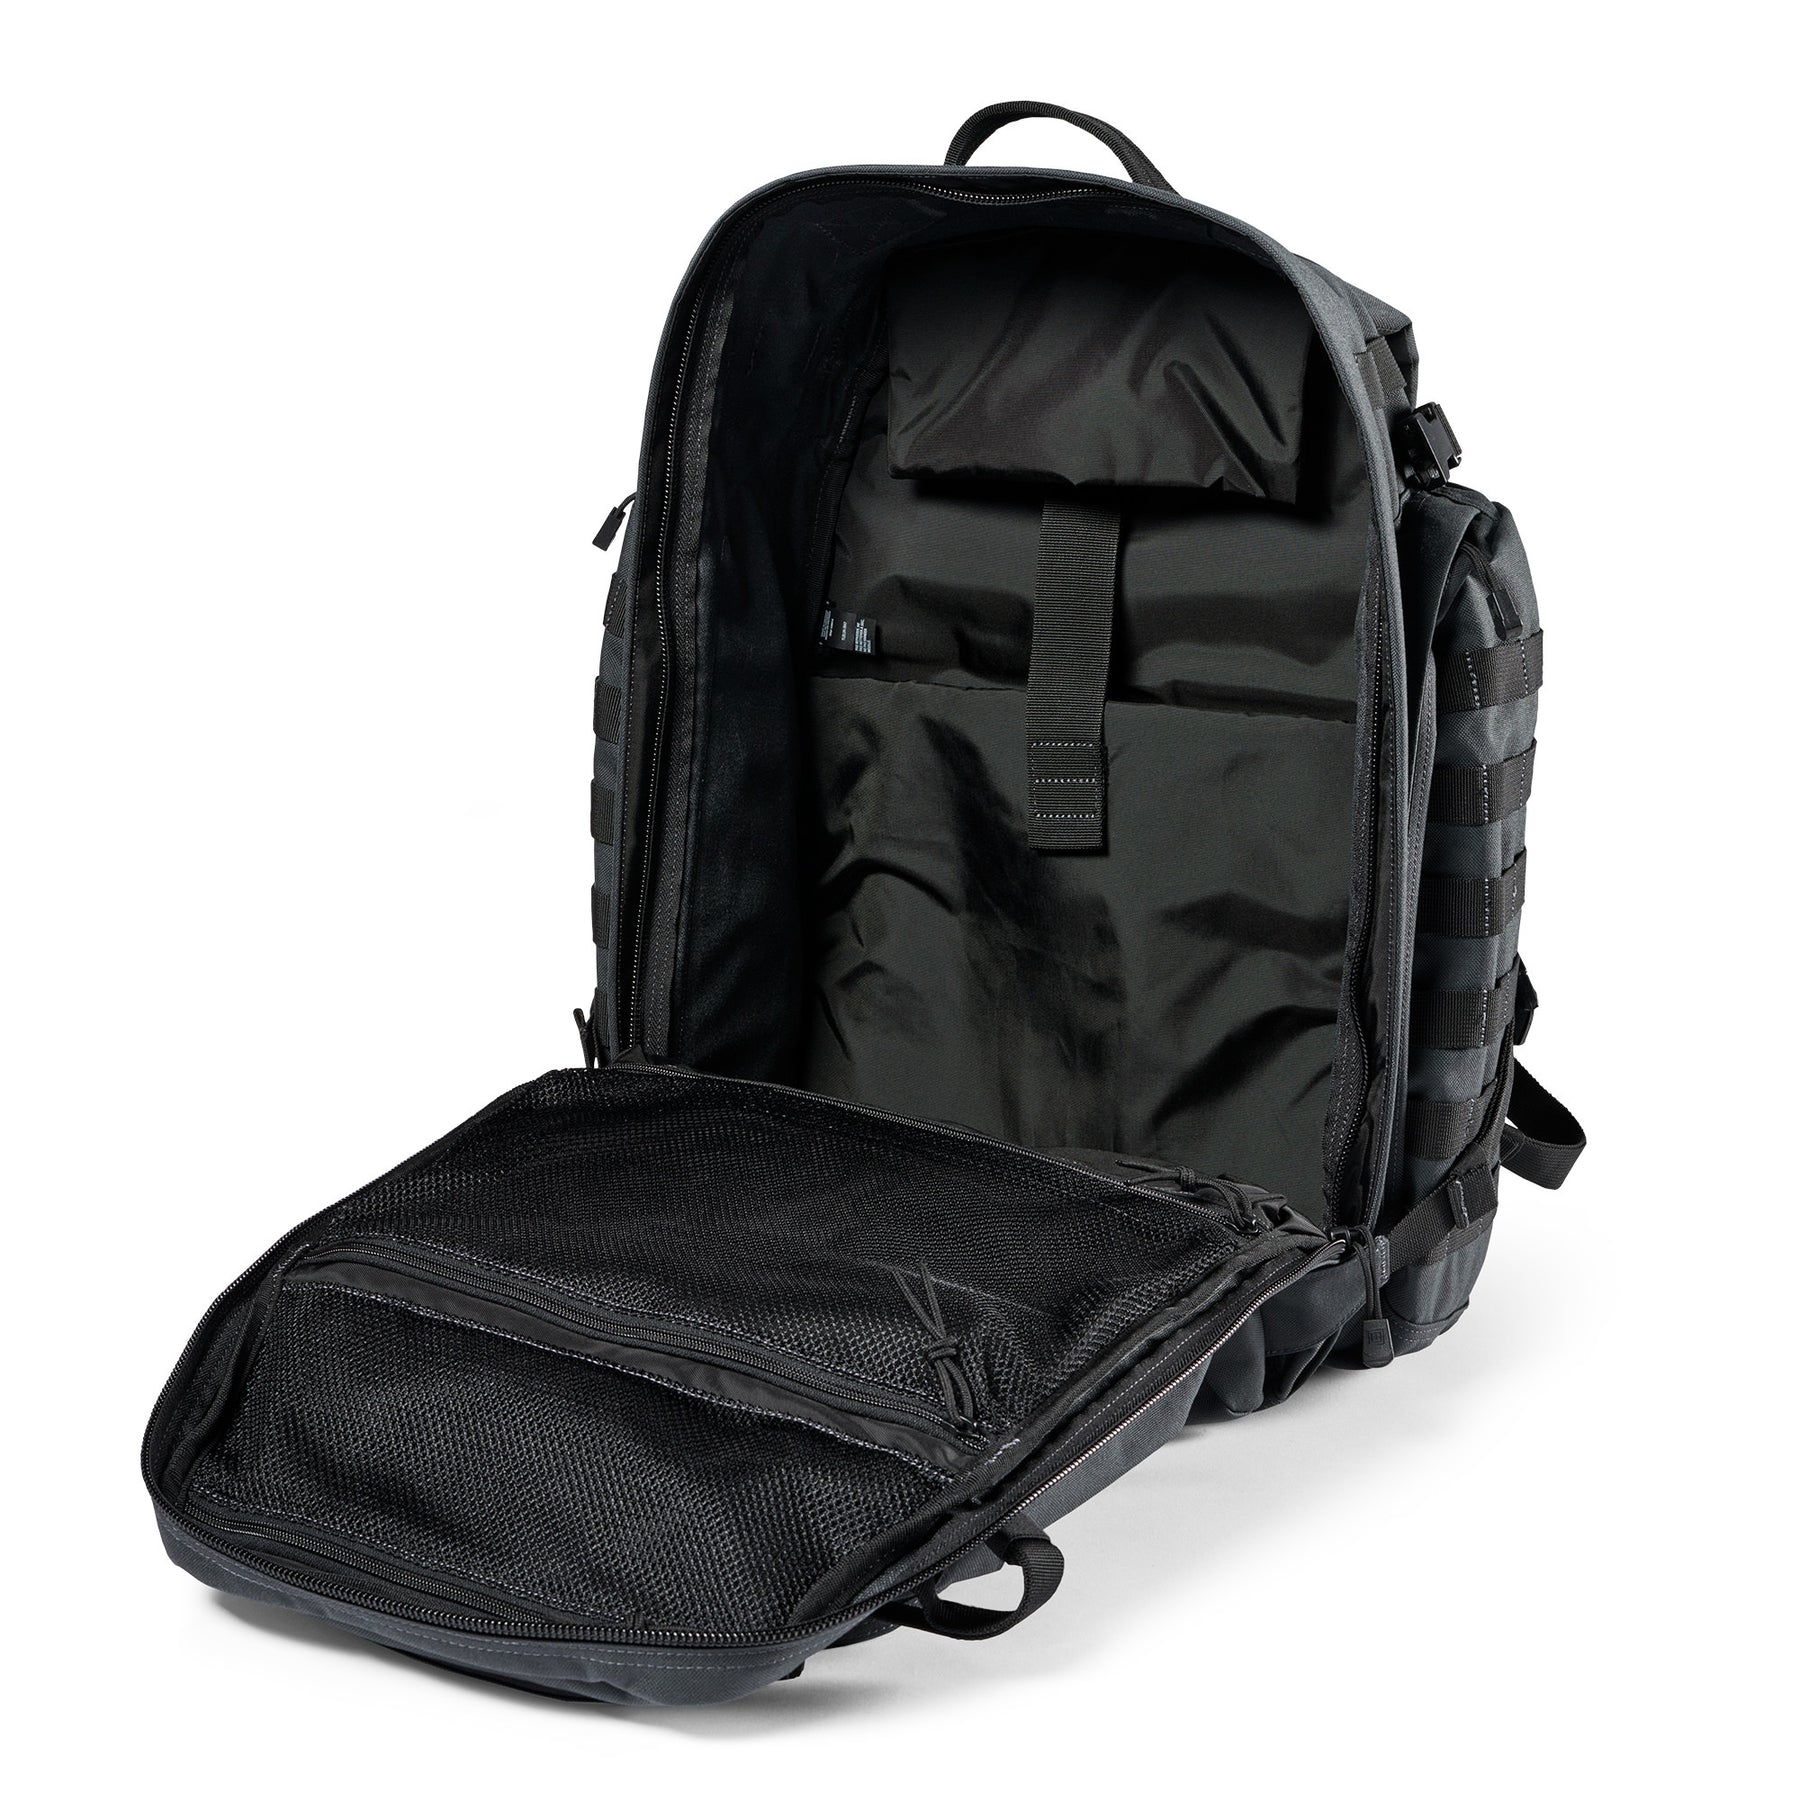 Zaino RUSH72 2.0 di 5.11 Tactical Double Tap (grigio e nero) - vista interno con tasca imbottita per laptop